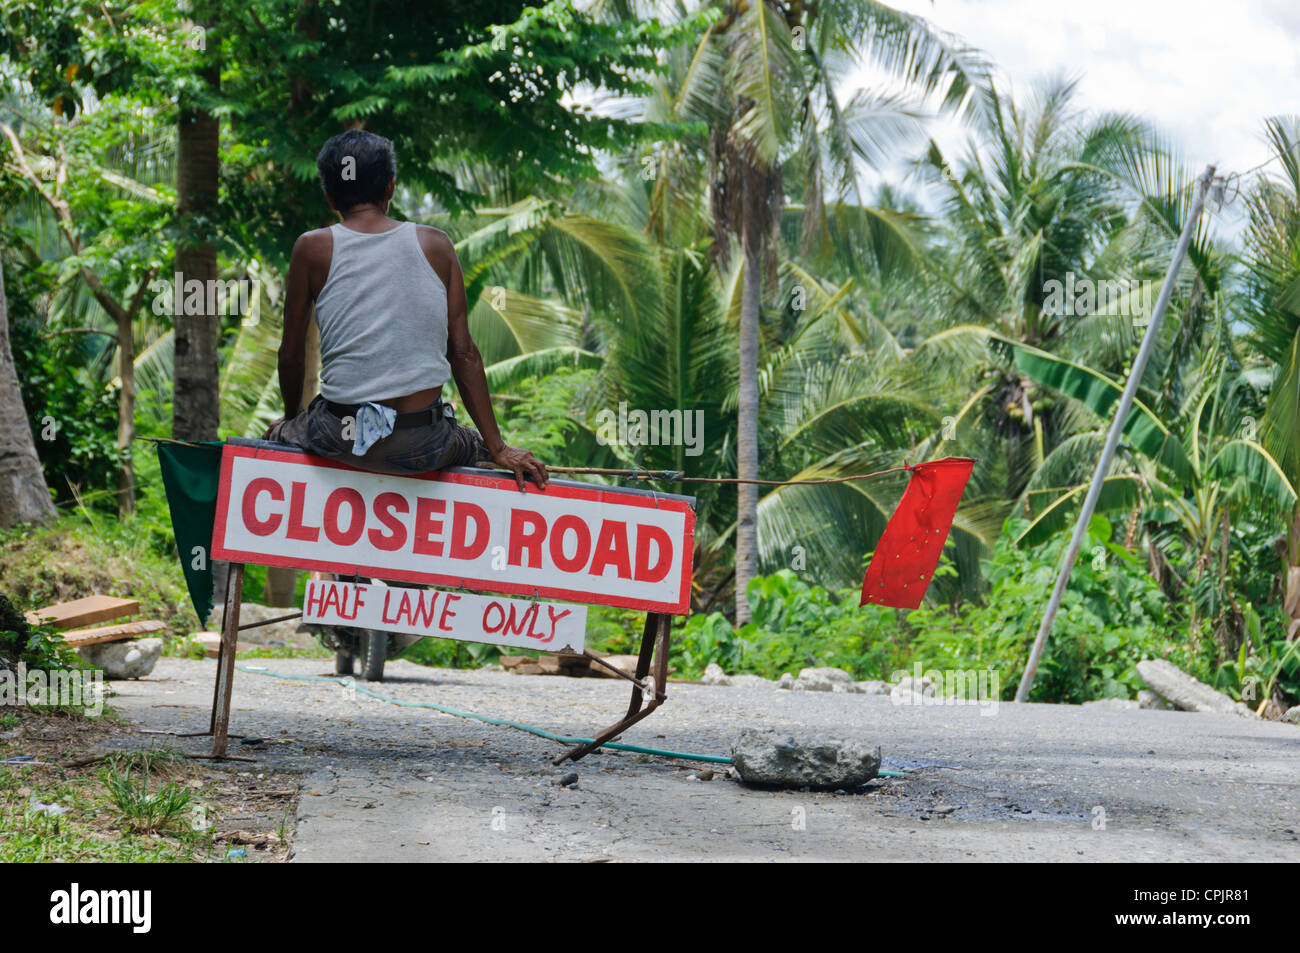 Braungebrannte asiatische Straße Arbeiter rote Fahne Straße arbeitet Baustelle im Dschungel - Sabang Oriental Mindoro Philippinen Südost-Asien Stockfoto